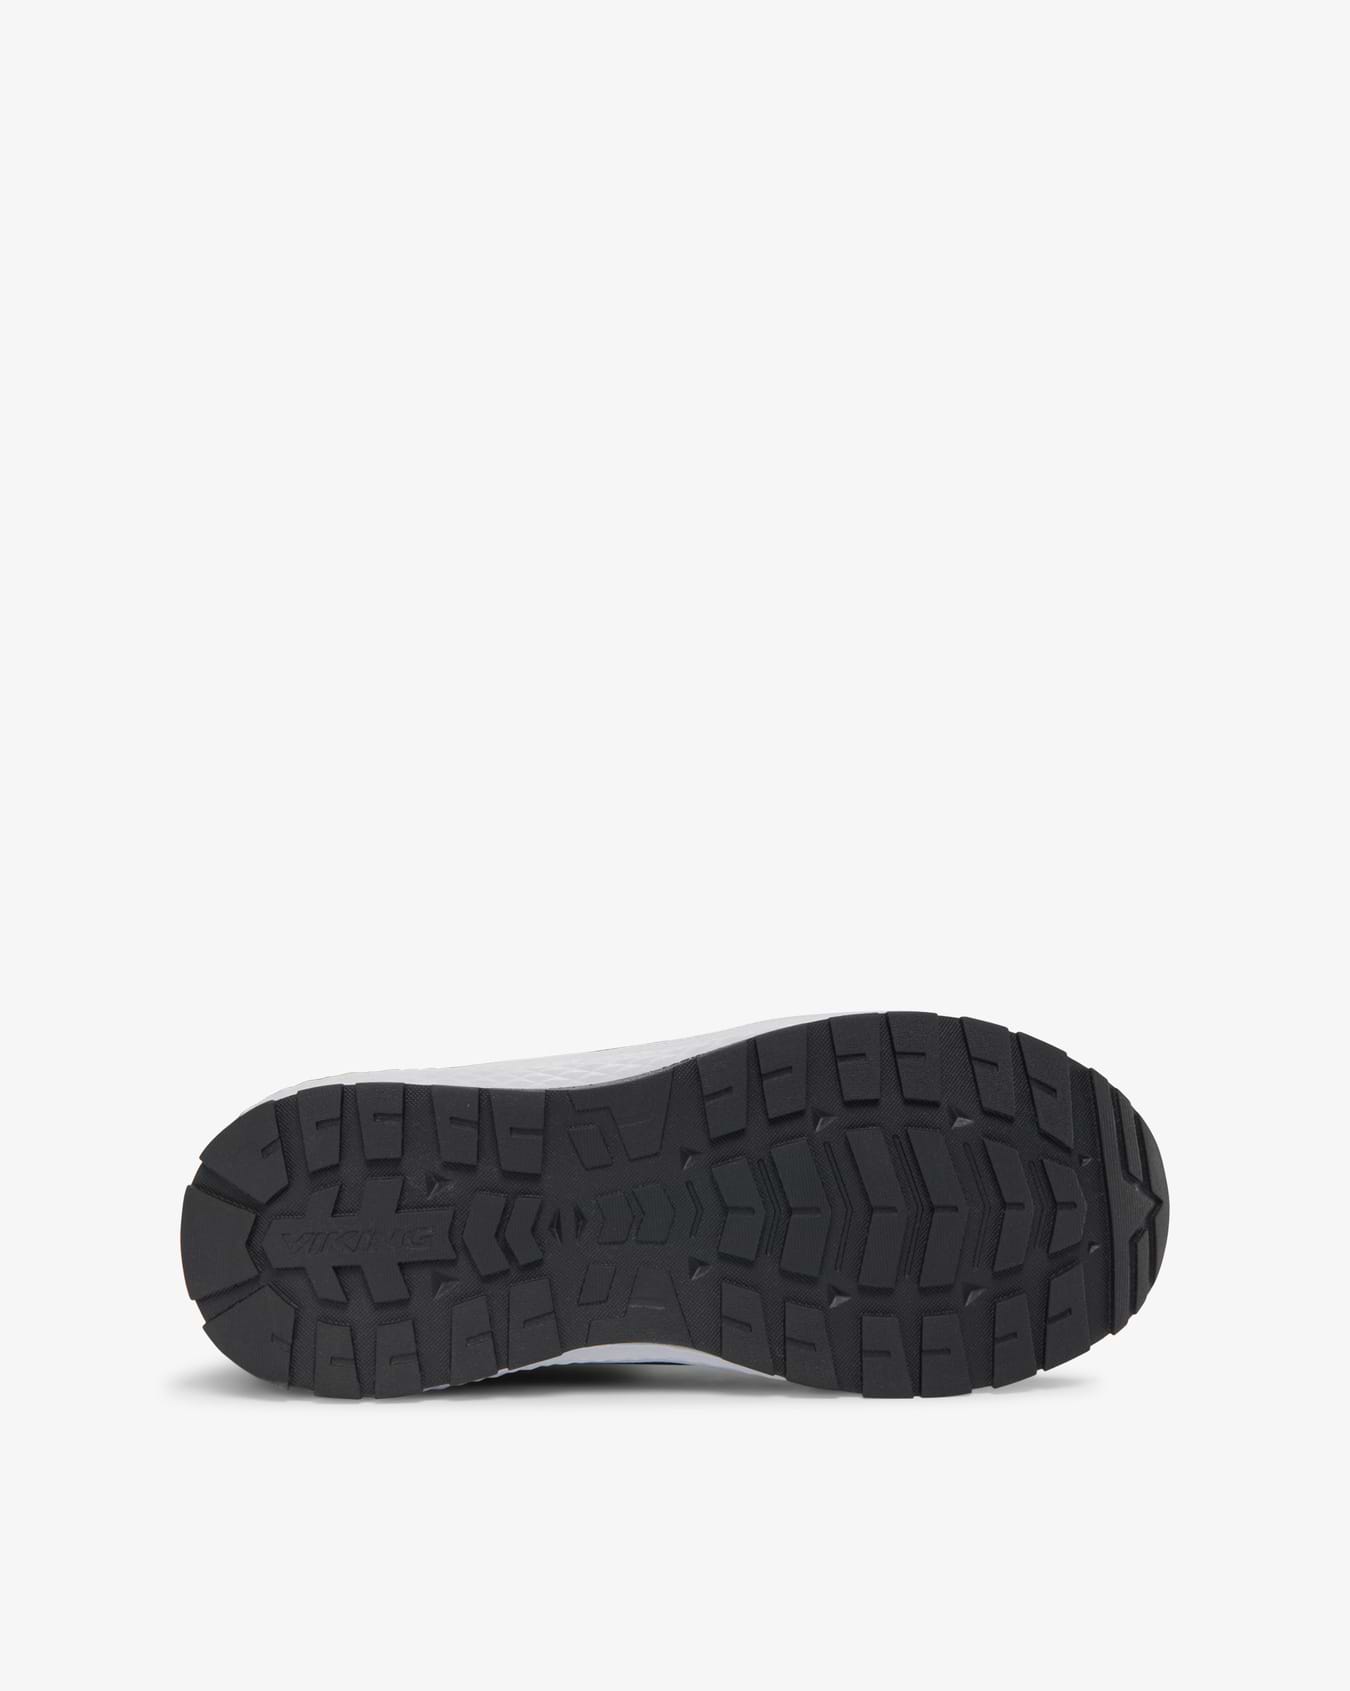 Viking Equip Jr Sneaker Black Waterproof Insulated Zip